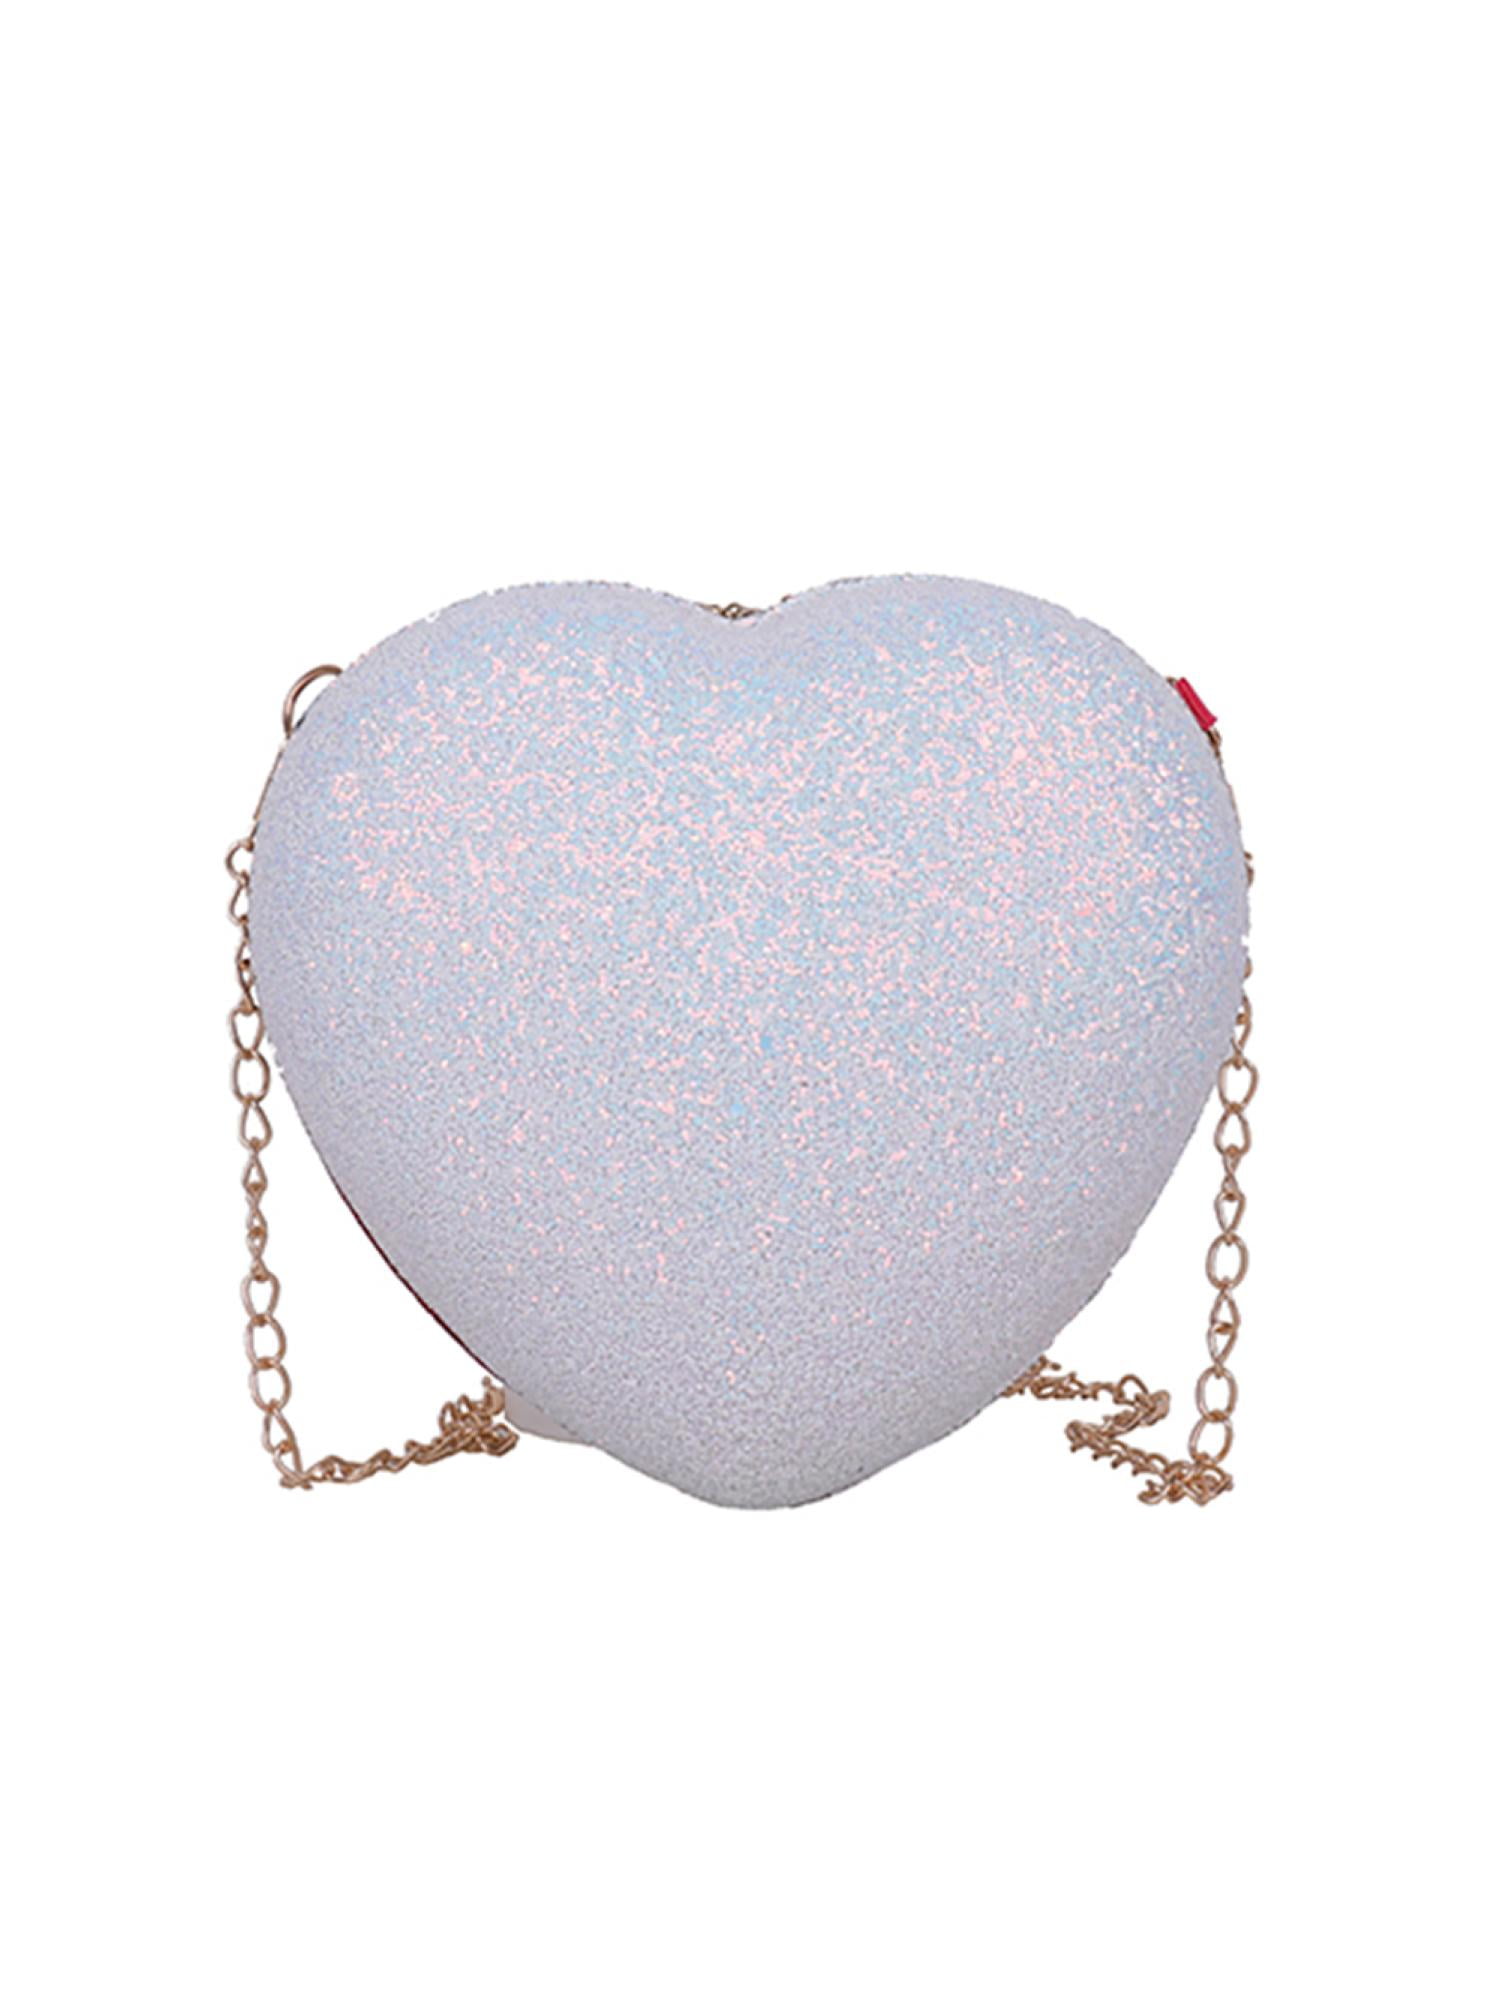 Nitouy Sequins Love Heart Messenger Bag Glitter Girl Chain